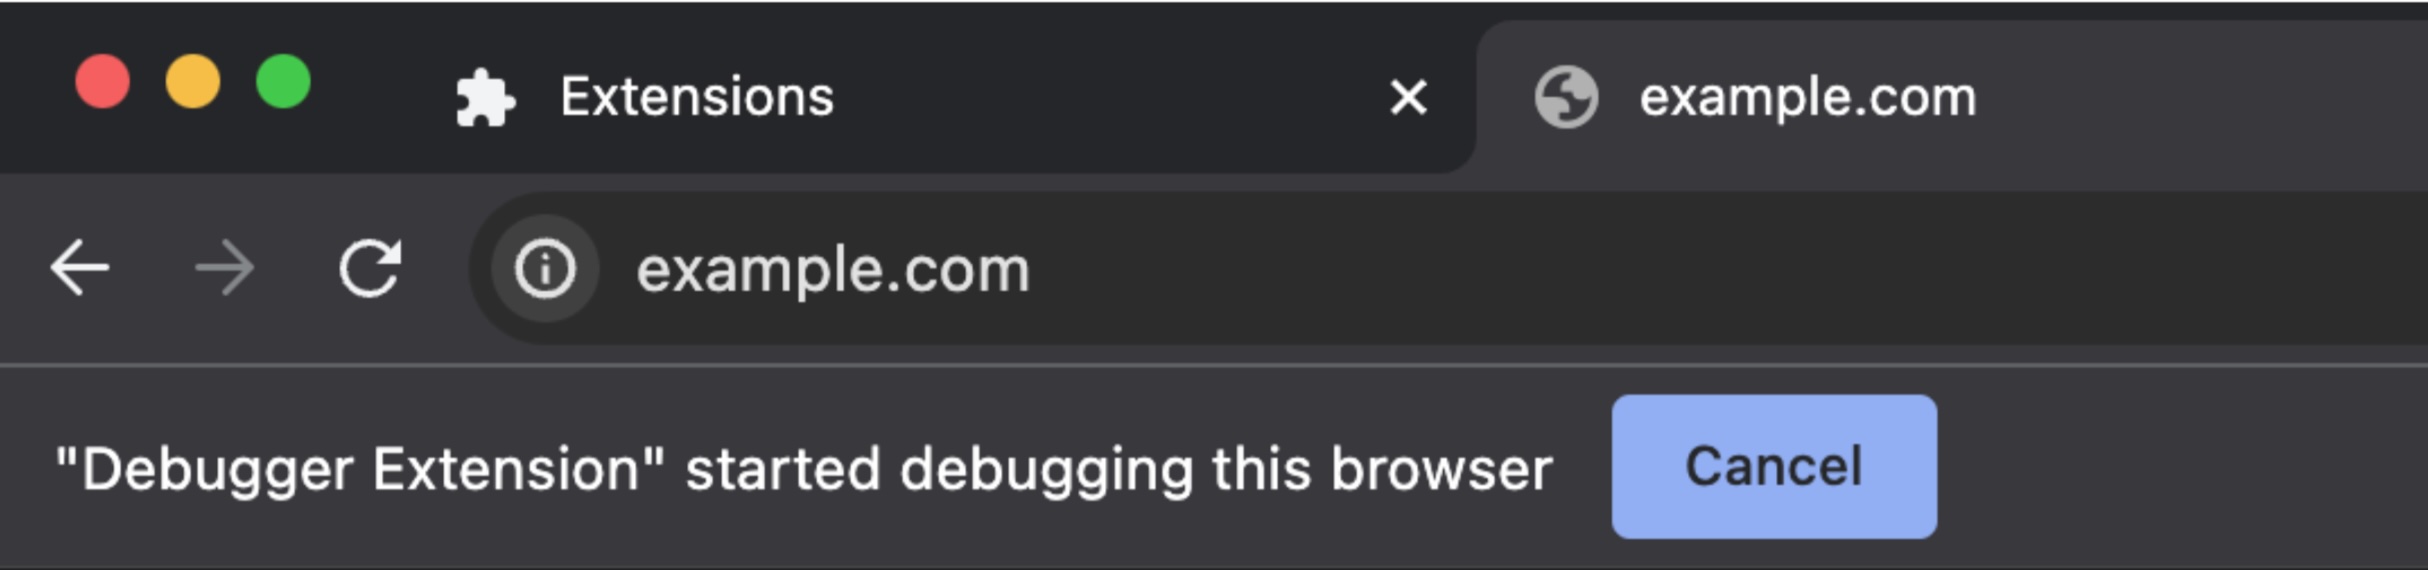 צילום מסך של סרגל הכתובות ב-Chrome שבו מופיעה ההודעה &#39;התוסף לניפוי באגים התחיל לנפות באגים בדפדפן זה&#39;